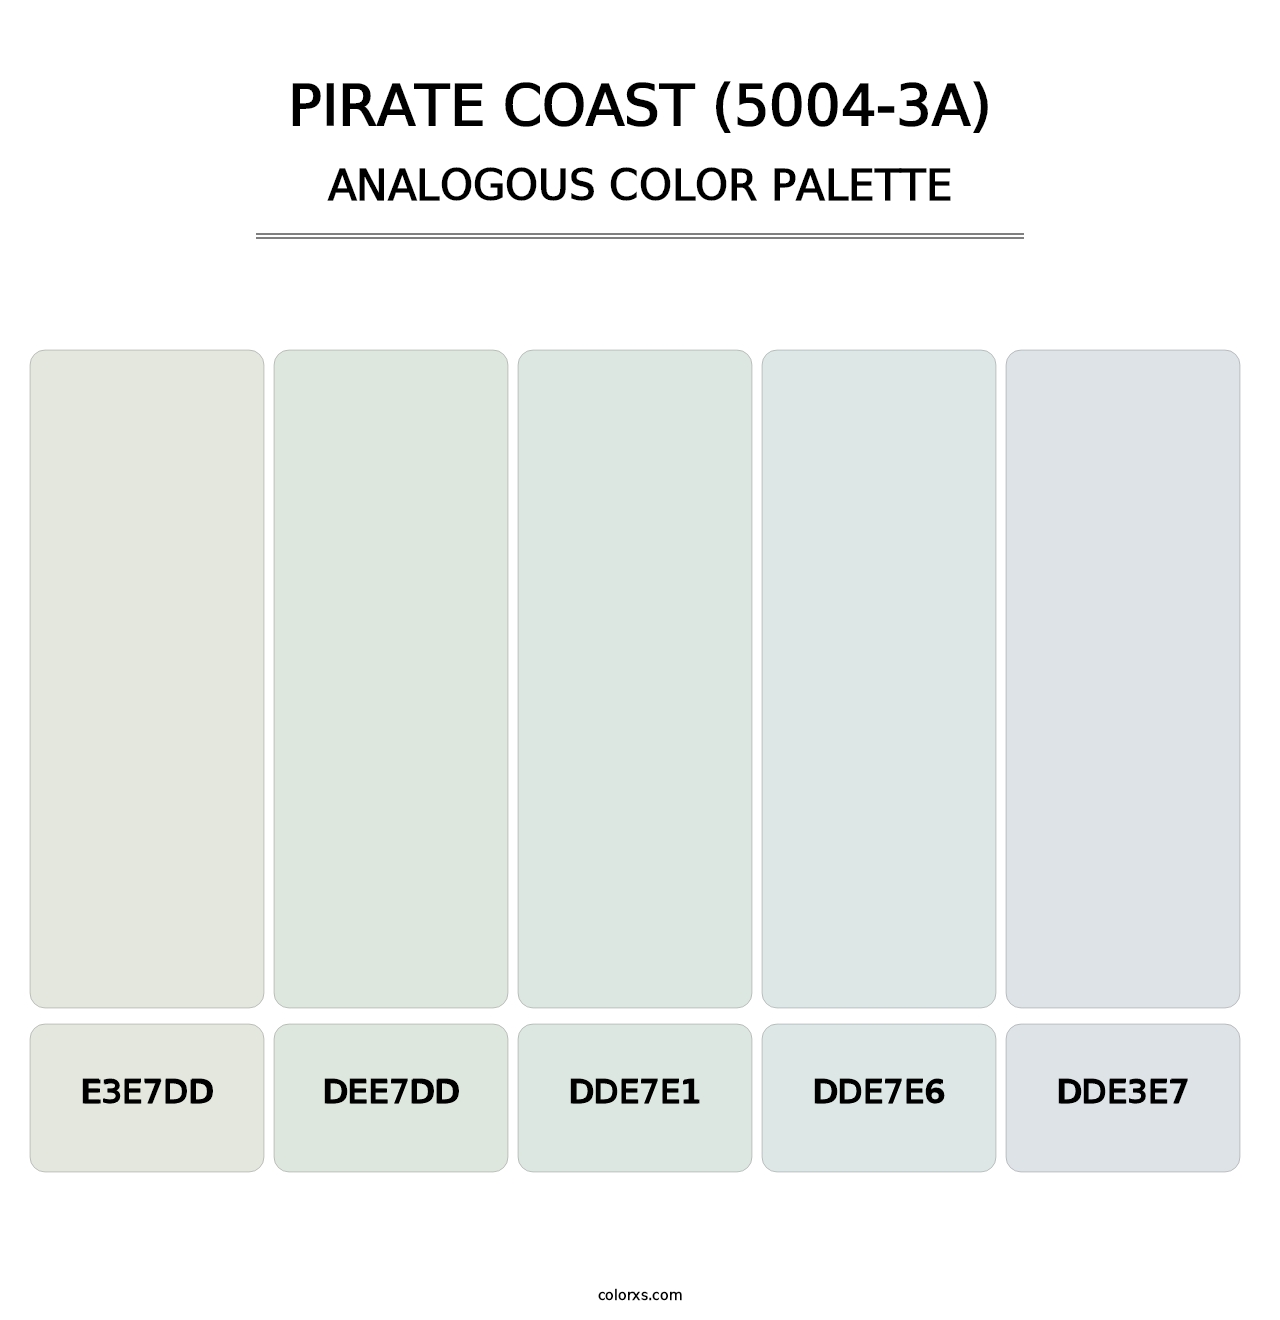 Pirate Coast (5004-3A) - Analogous Color Palette